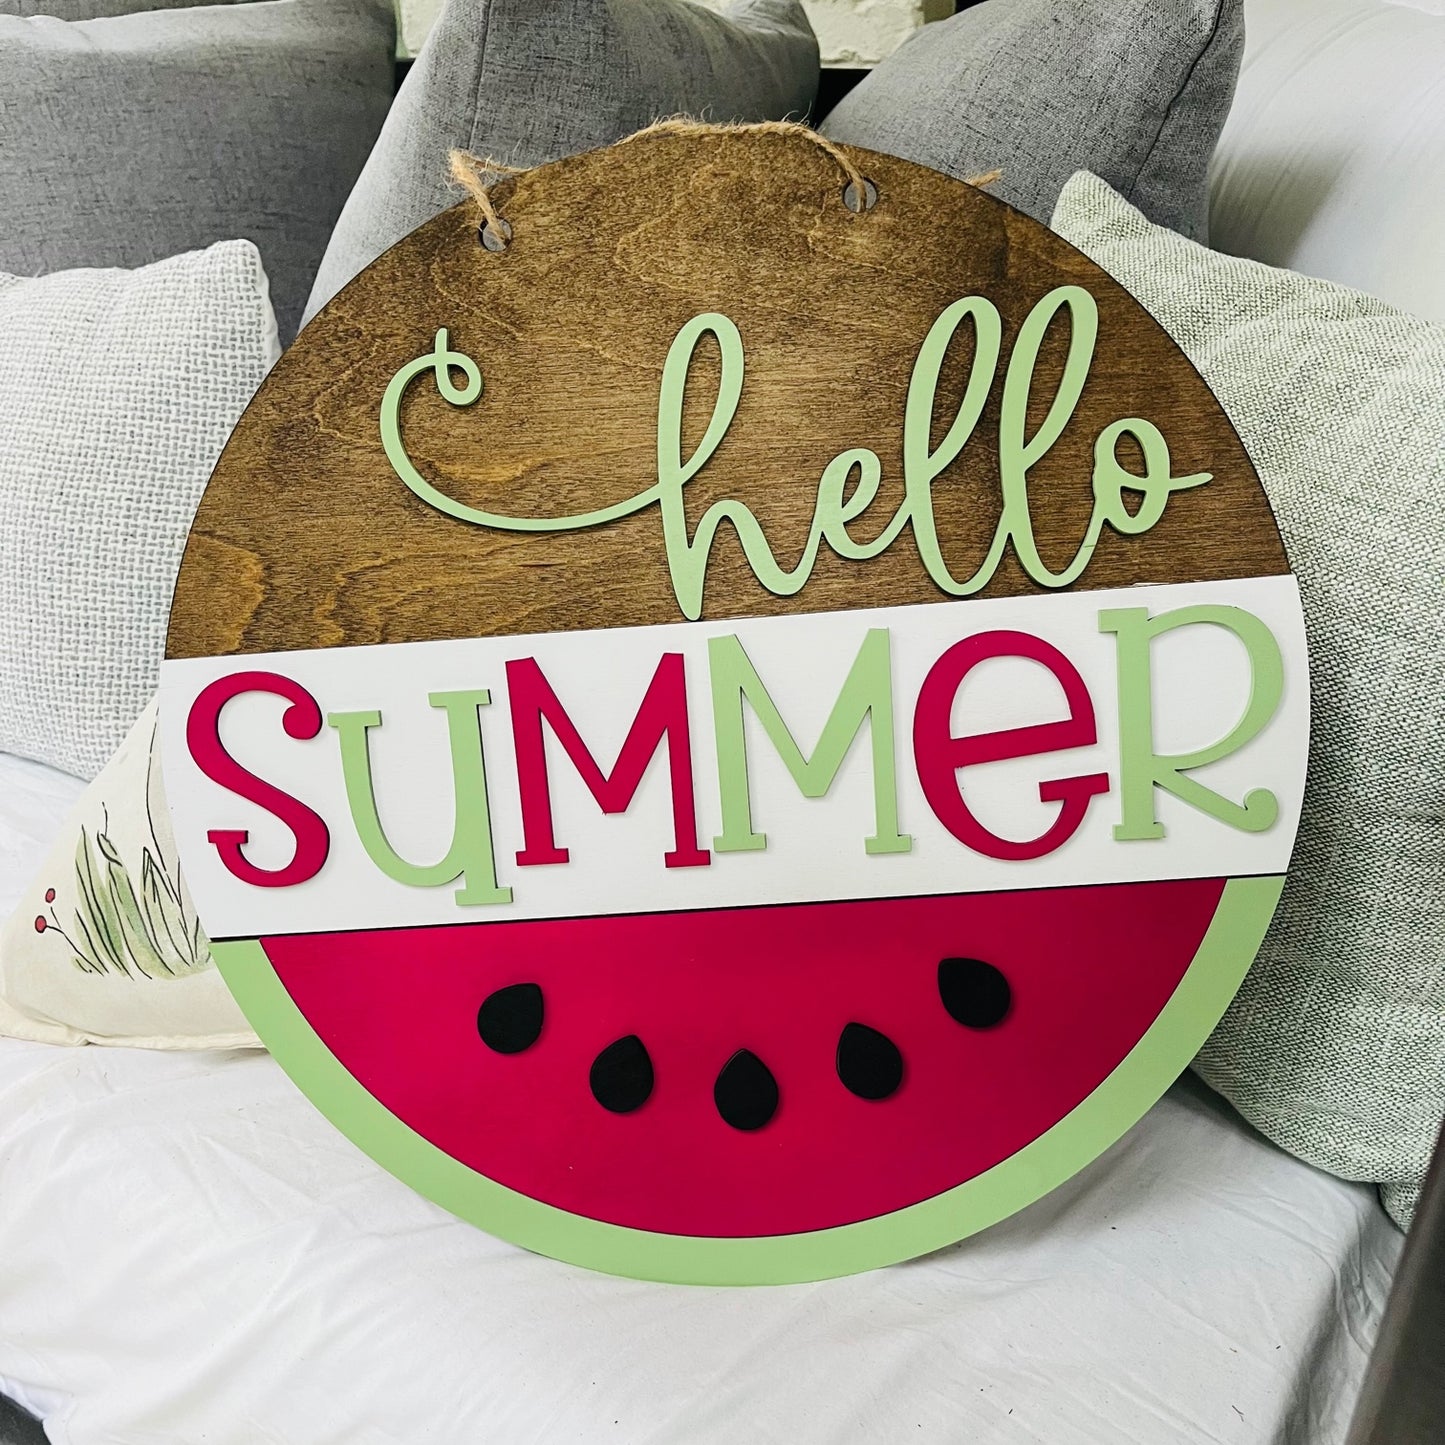 Round Hello Summer Watermelon Sign